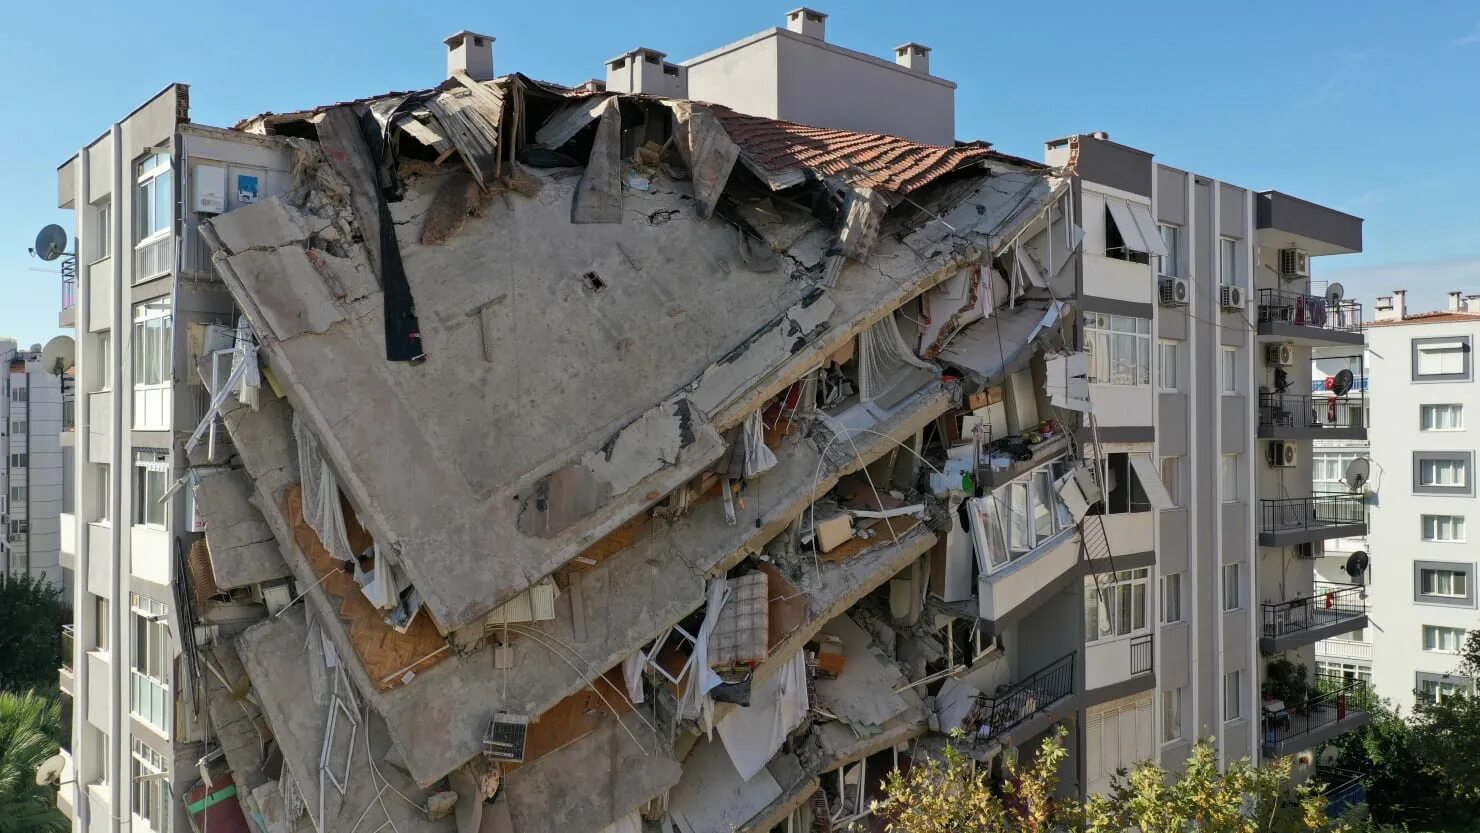 Когда будет сильное землетрясение. Измир Турция землетрясение 2020. Землетрясение в Стамбуле 1999. Землетрясение в Турции 30.10.2020. Измир землетрясение 1999.